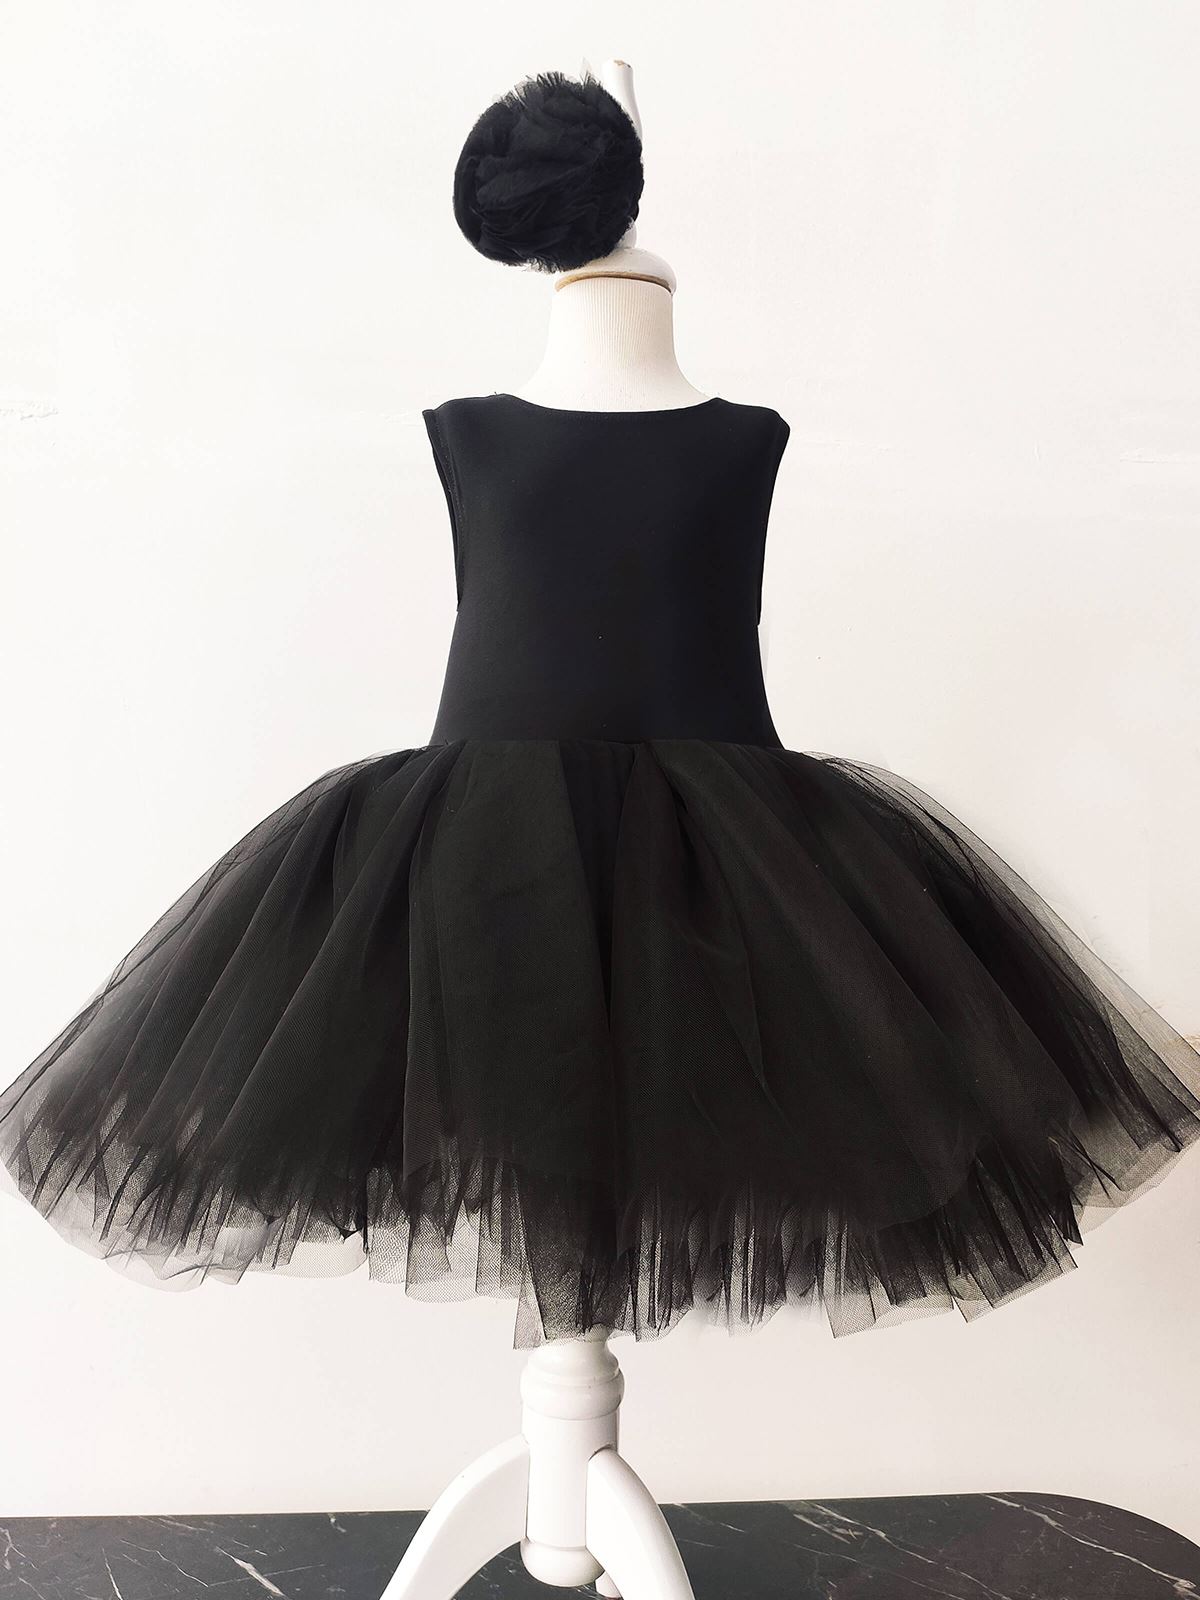 Shecco Babba Balerin Model Kız Çocuk Tütü Elbise, Pon Pon Bandana Takımı - Çocuk Abiye Elbise 6-10 Yaş Abiye Siyah